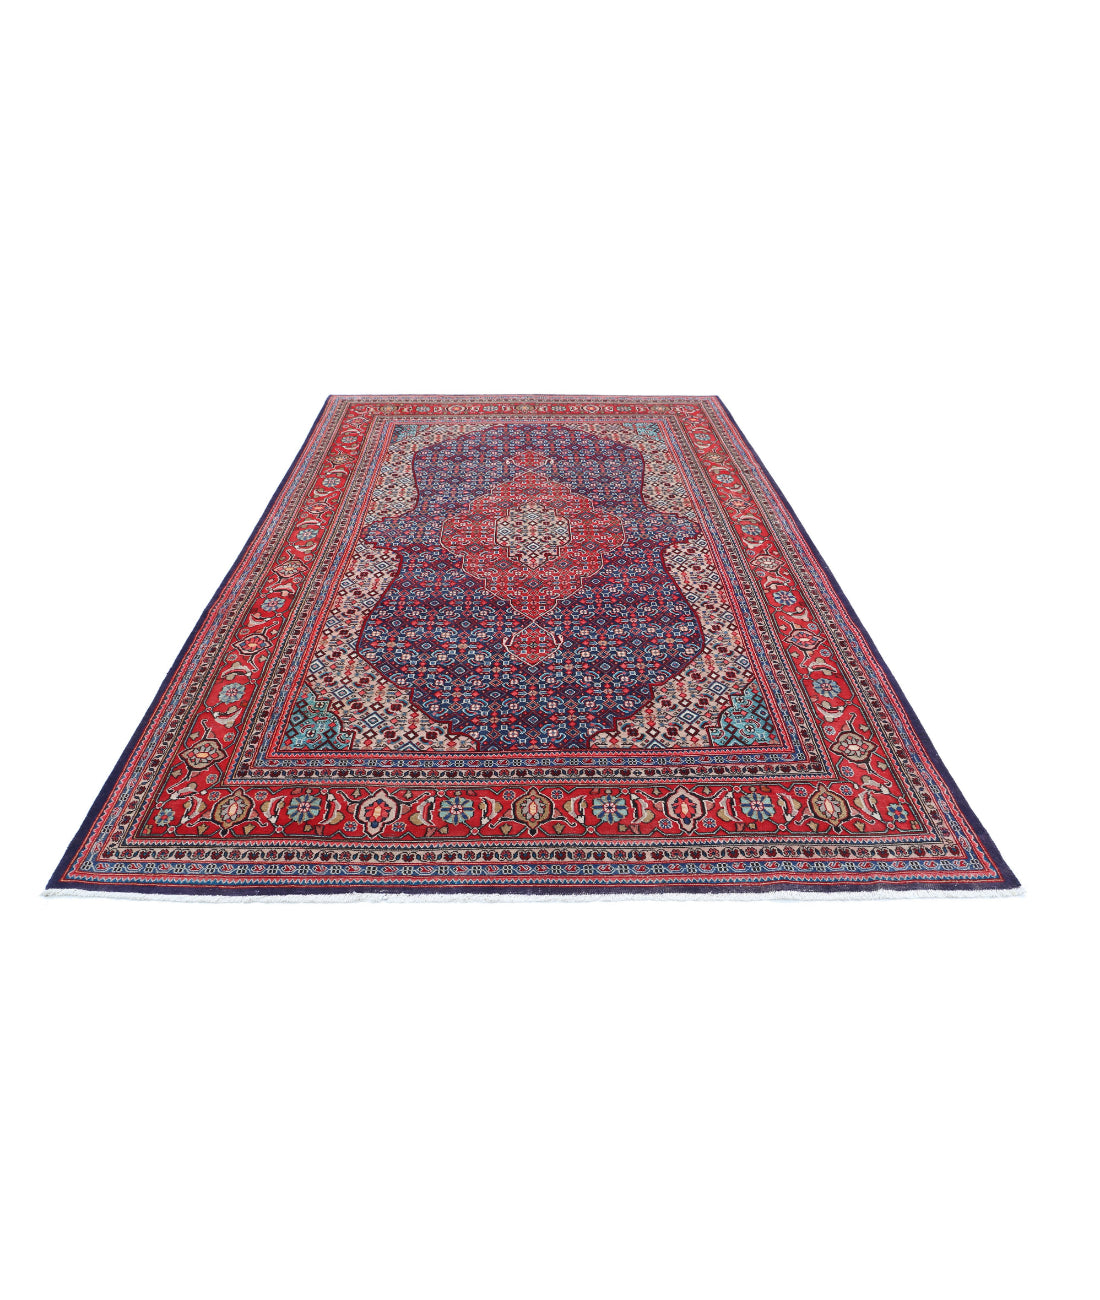 Hand Knotted Persian Bijar Wool Rug - 6'7'' x 10'7'' 6'7'' x 10'7'' (198 X 318) / Blue / Red